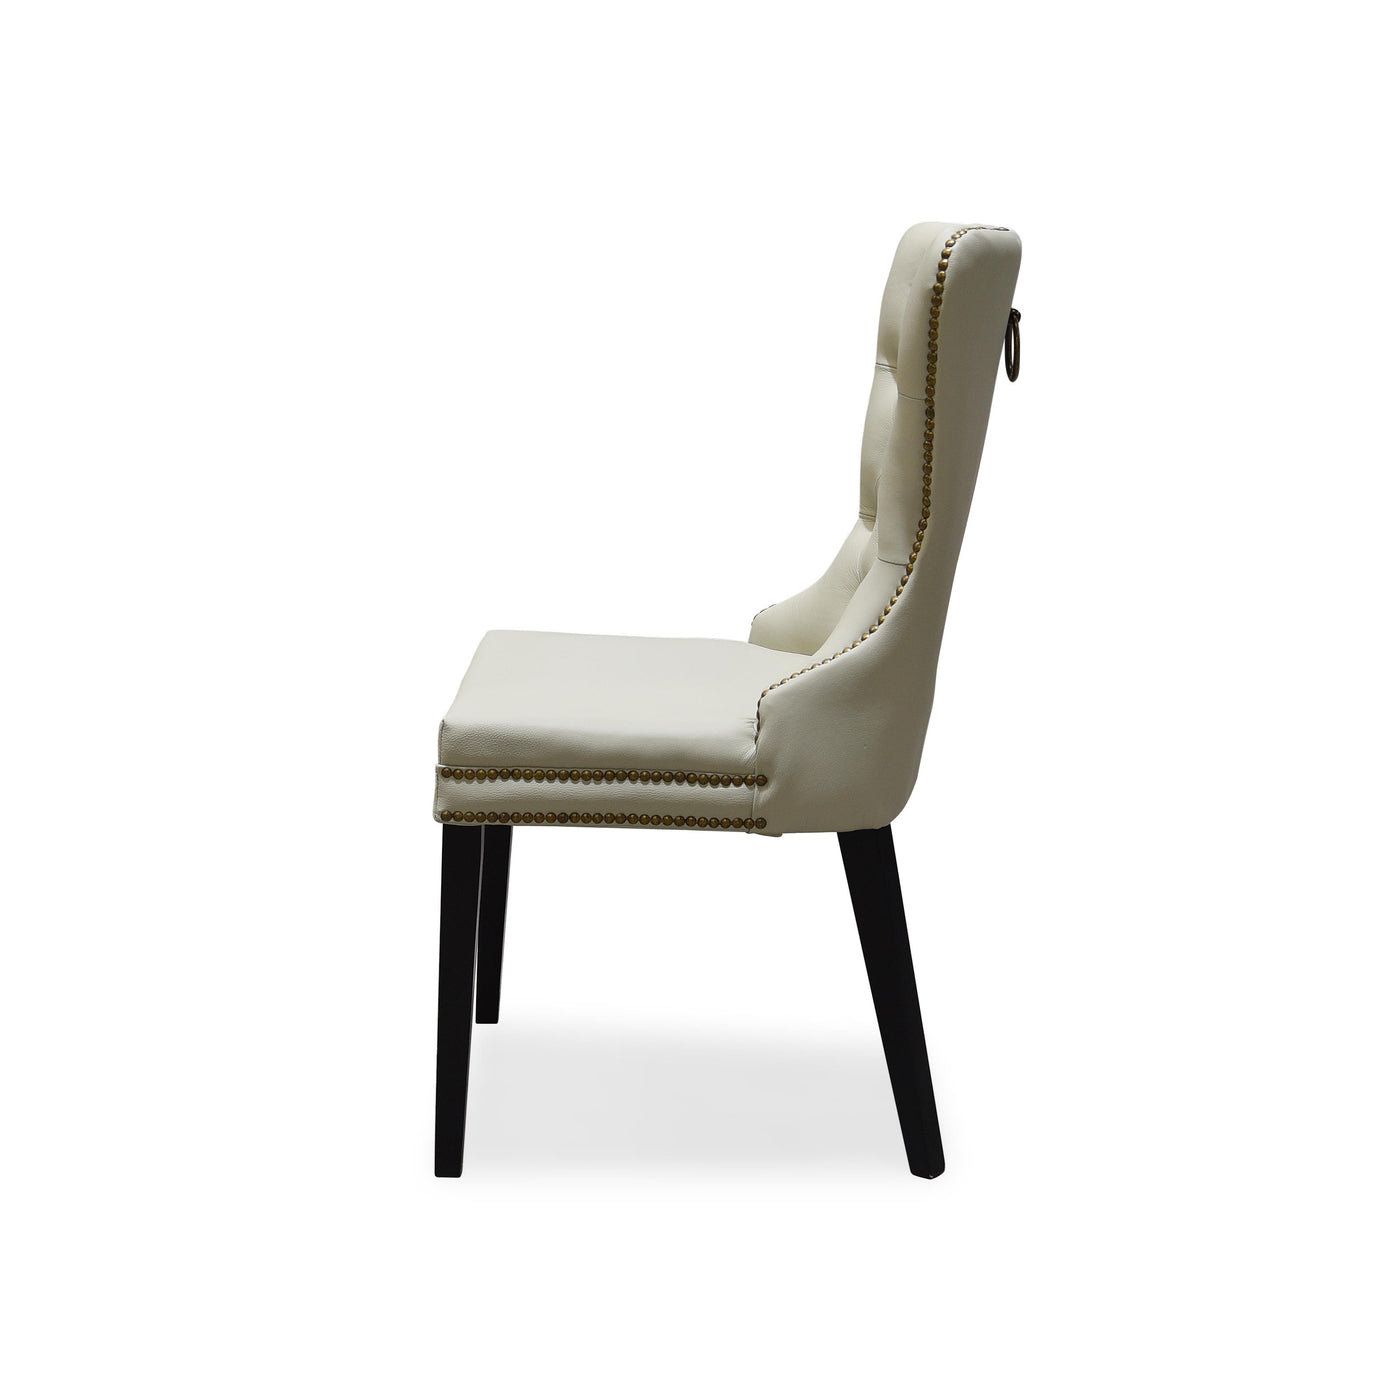 Luciano Dining Chair Ecru Leather - Future Classics Furniture